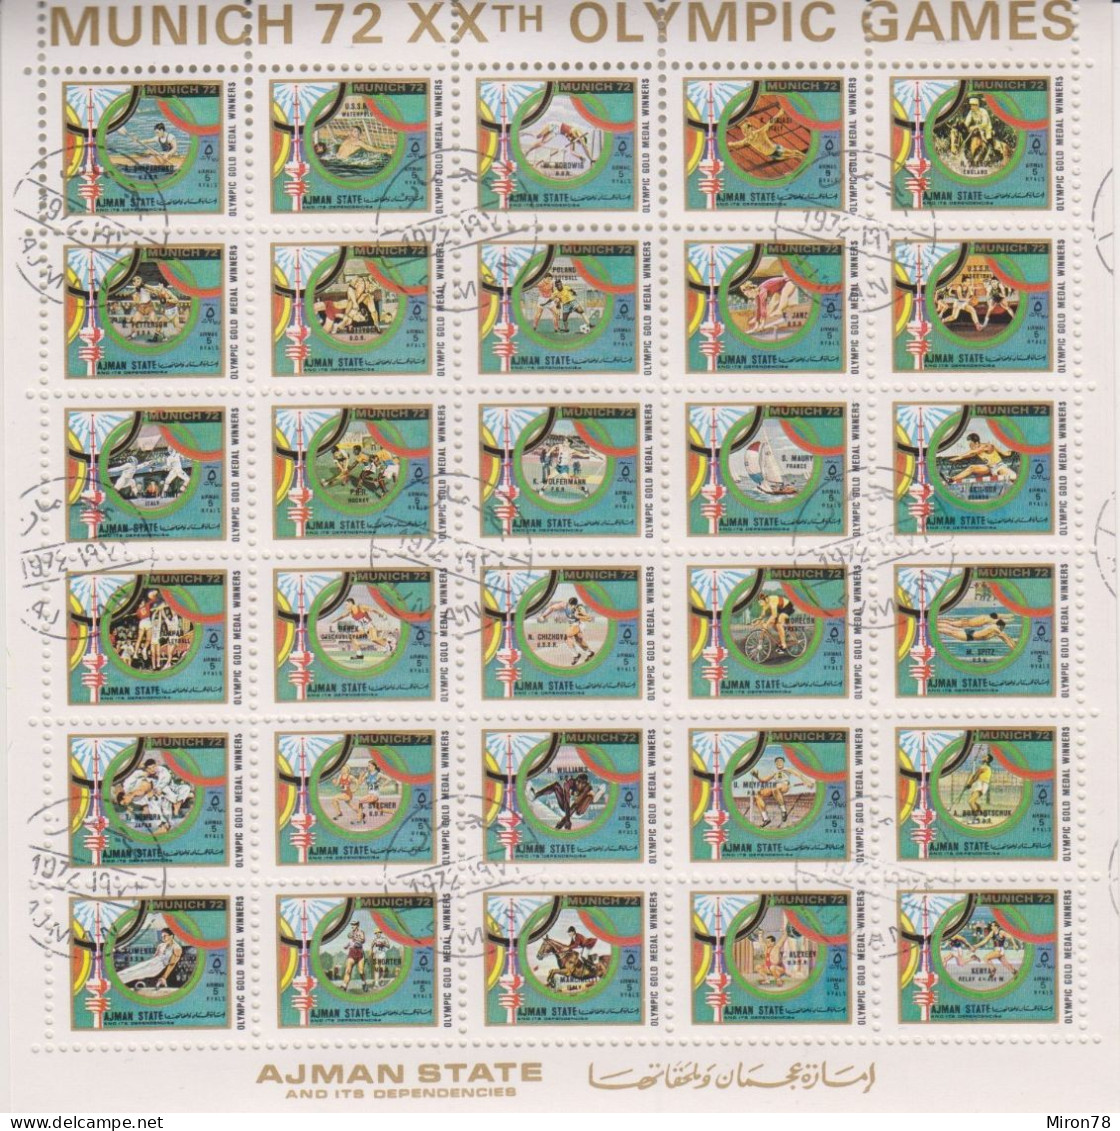 AJMAN OLYMPIC GAMES MUNICH 1972 #1605-34 SH USED (MNH-MICHEL 150 EURO!!!) - Zomer 1972: München